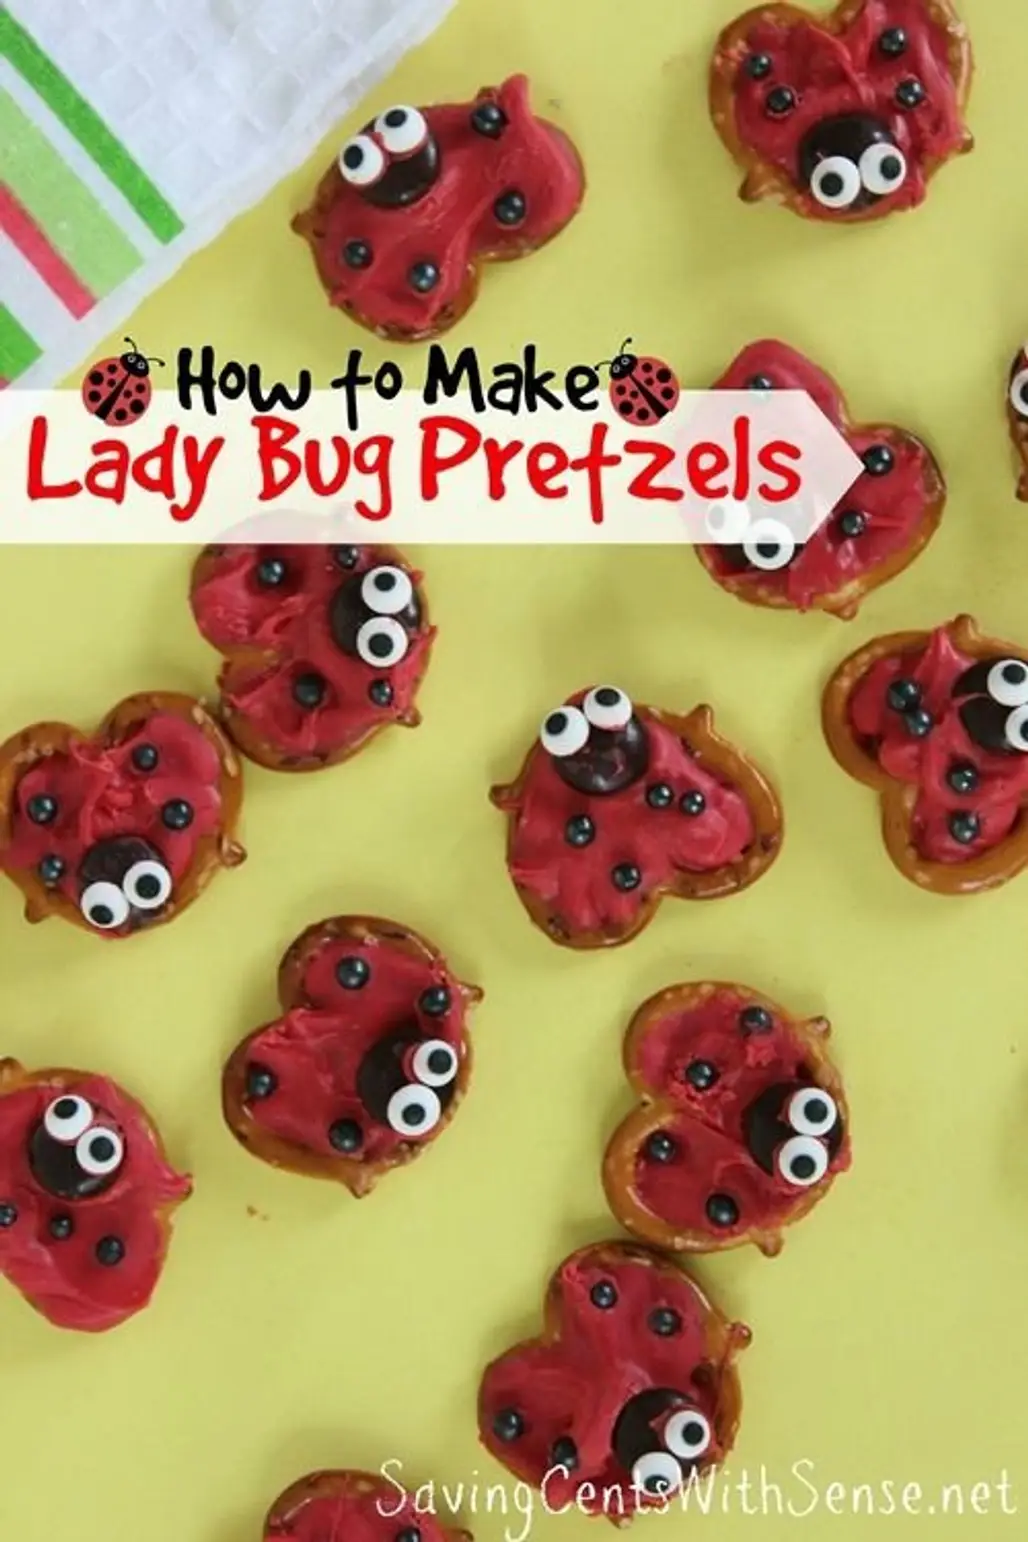 Make Lady Bug Pretzels for Your Favorite Little Ones